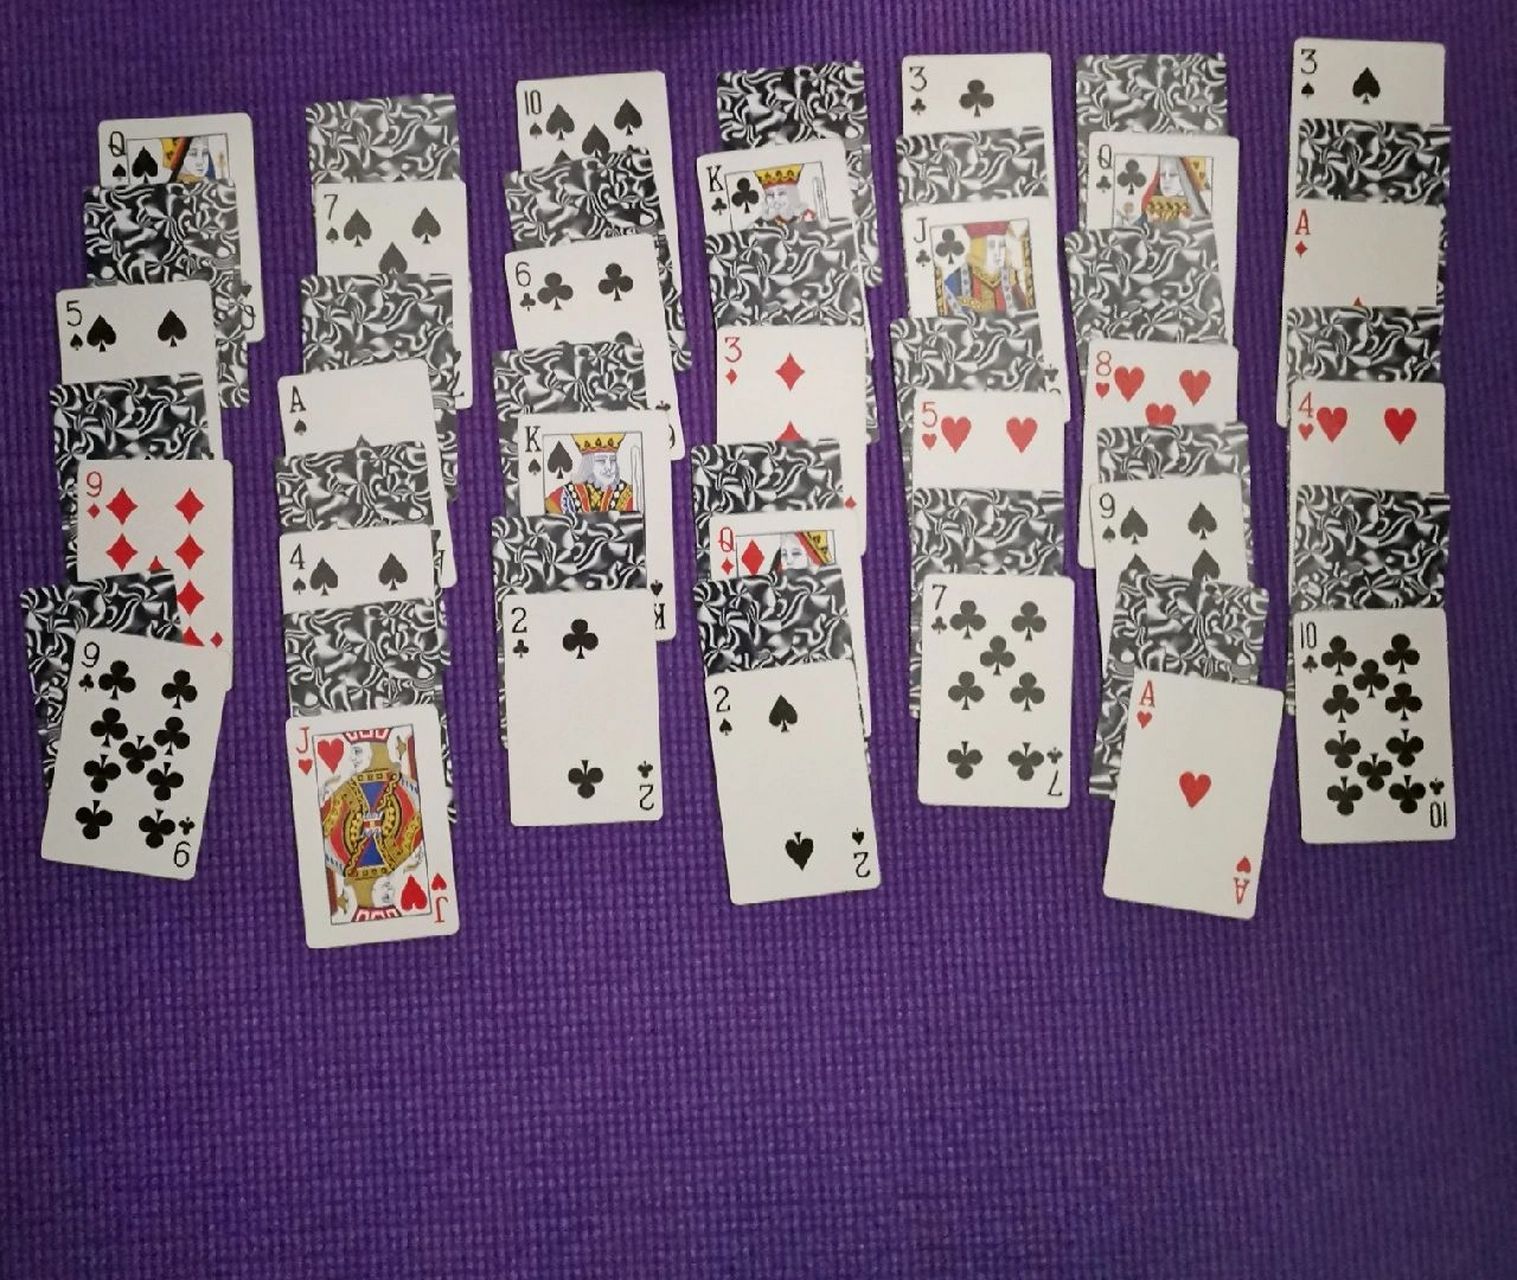 广东扑克牌玩法大全图片